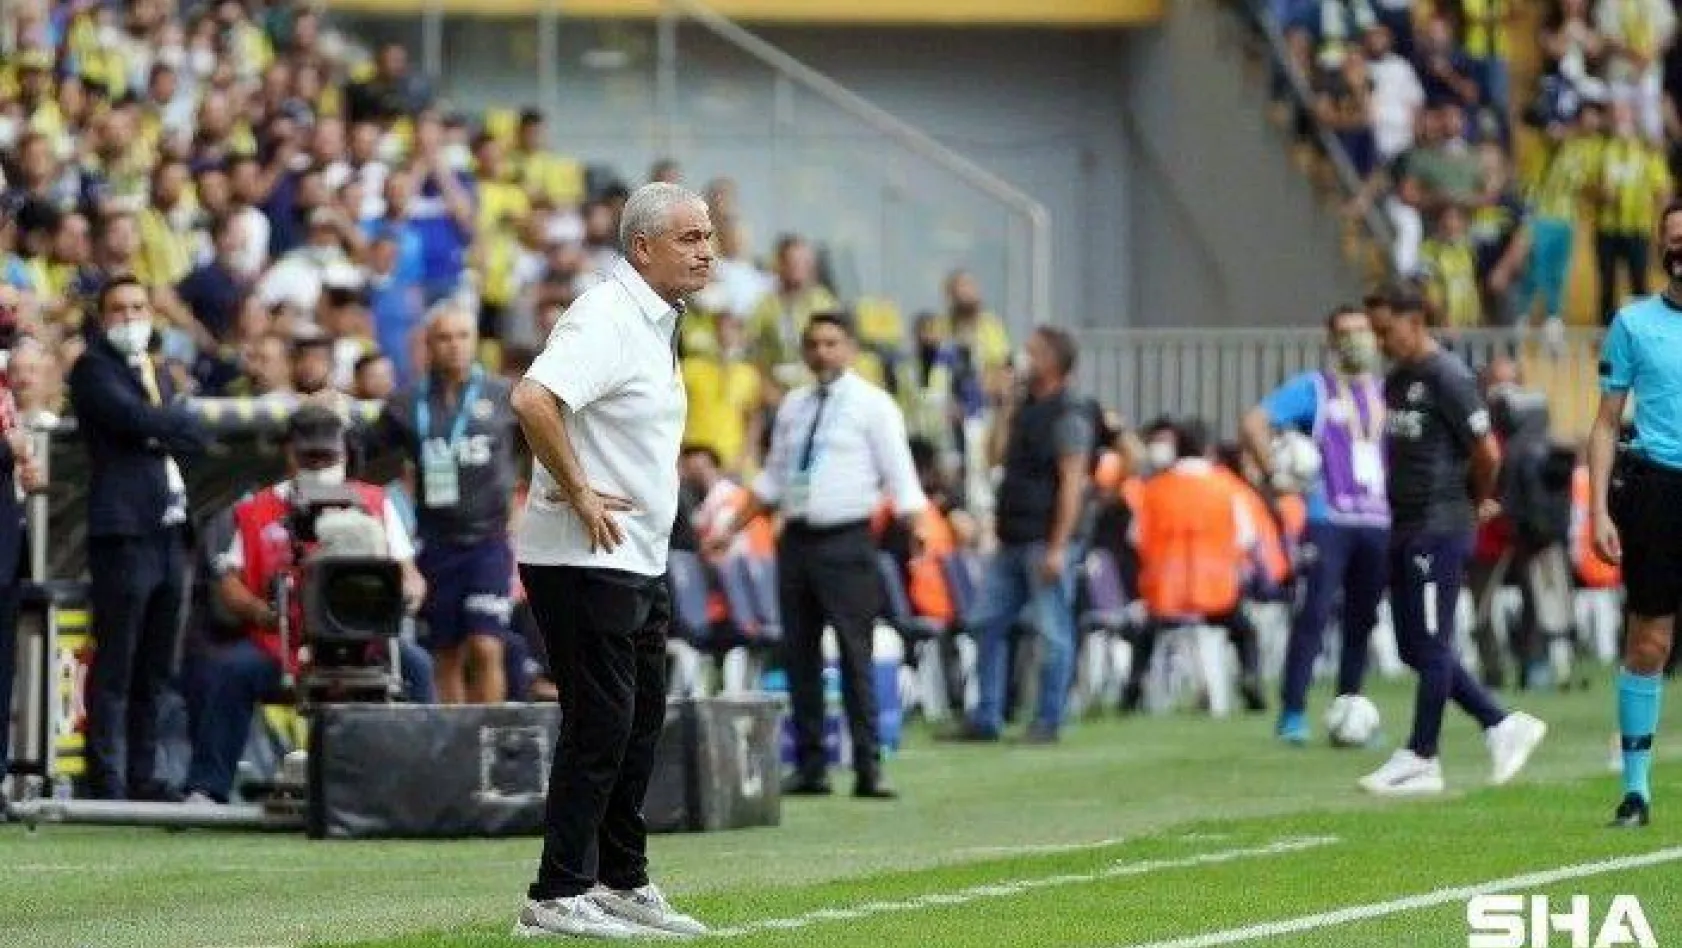 Süper Lig: Fenerbahçe: 1 - DG Sivasspor: 1 (Maç sonucu)